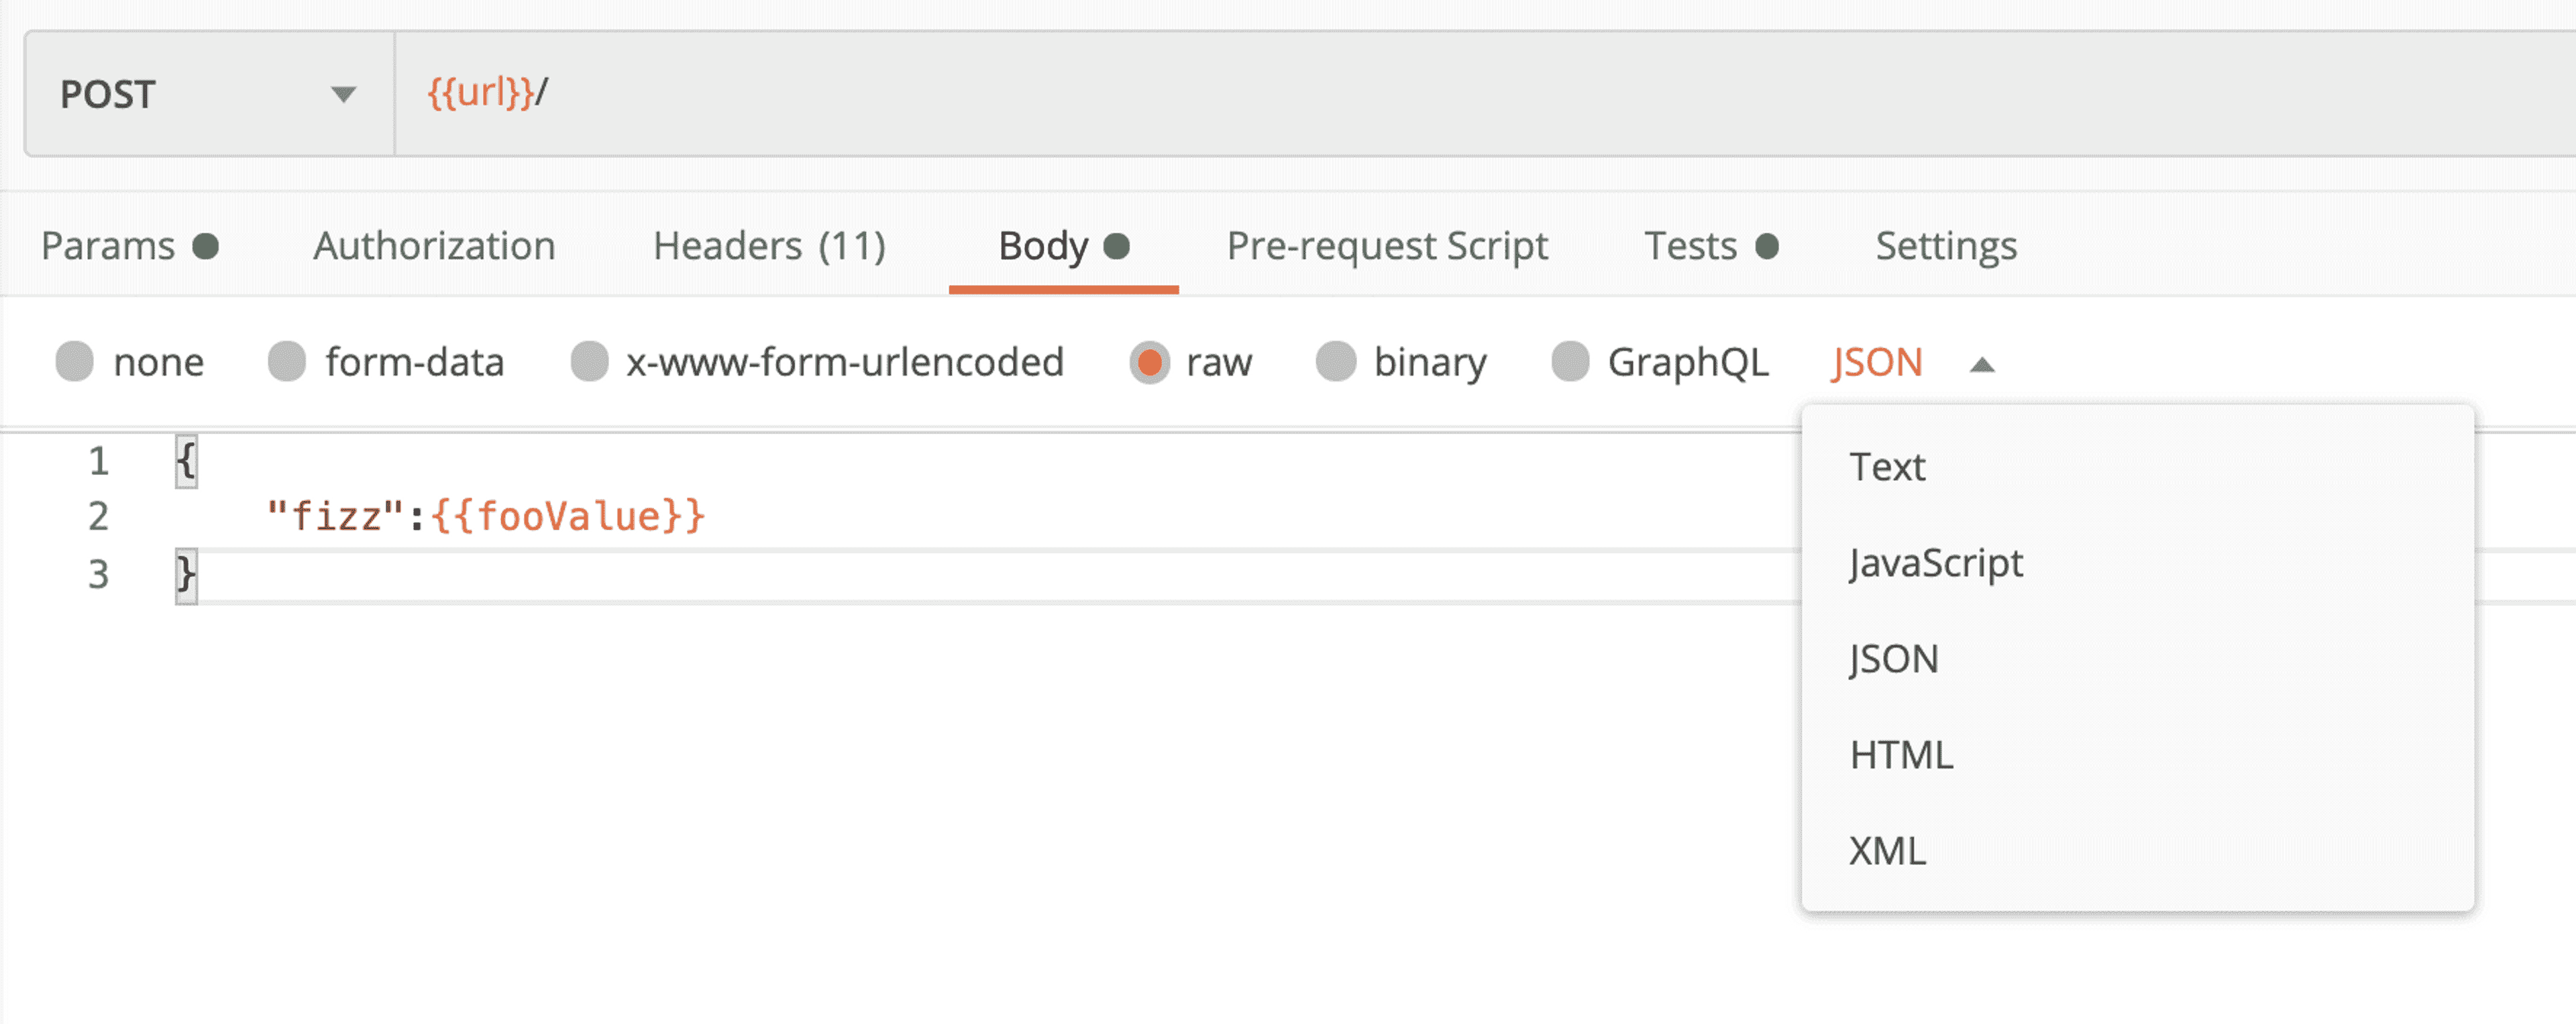 Le body d'une requête http sur Postman peut facilement être rempli avec différent types de données, comme du json, du xml ou du javascript par exemple